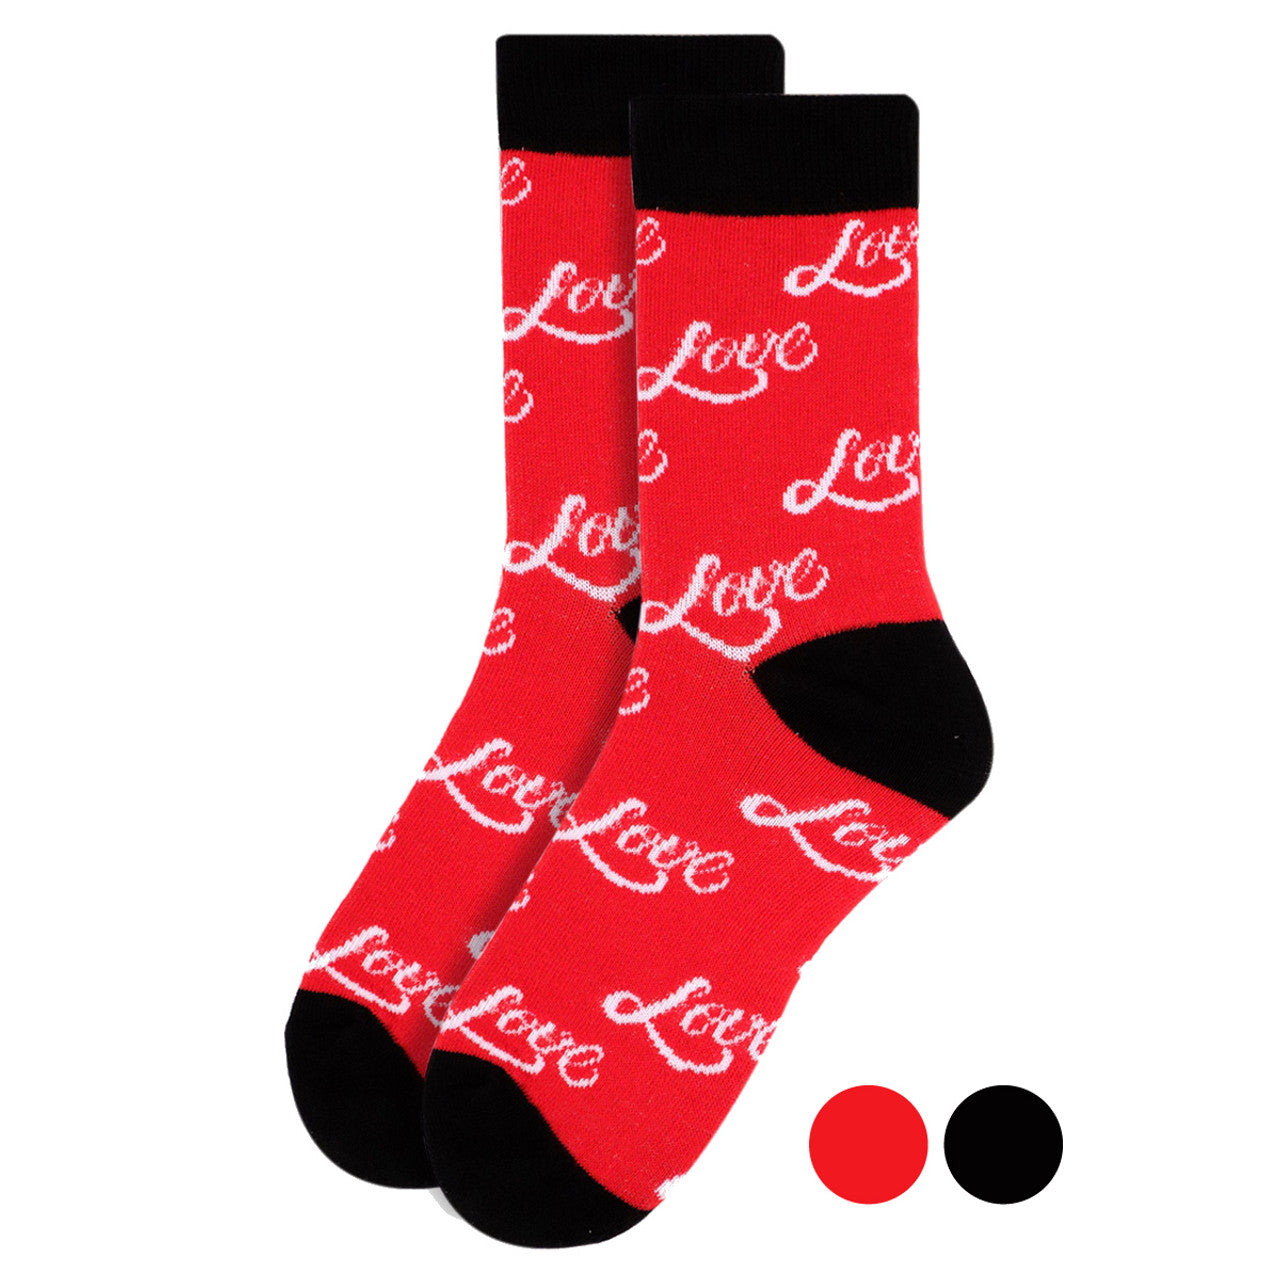 Selini New York - Socks Women's Love Novelty